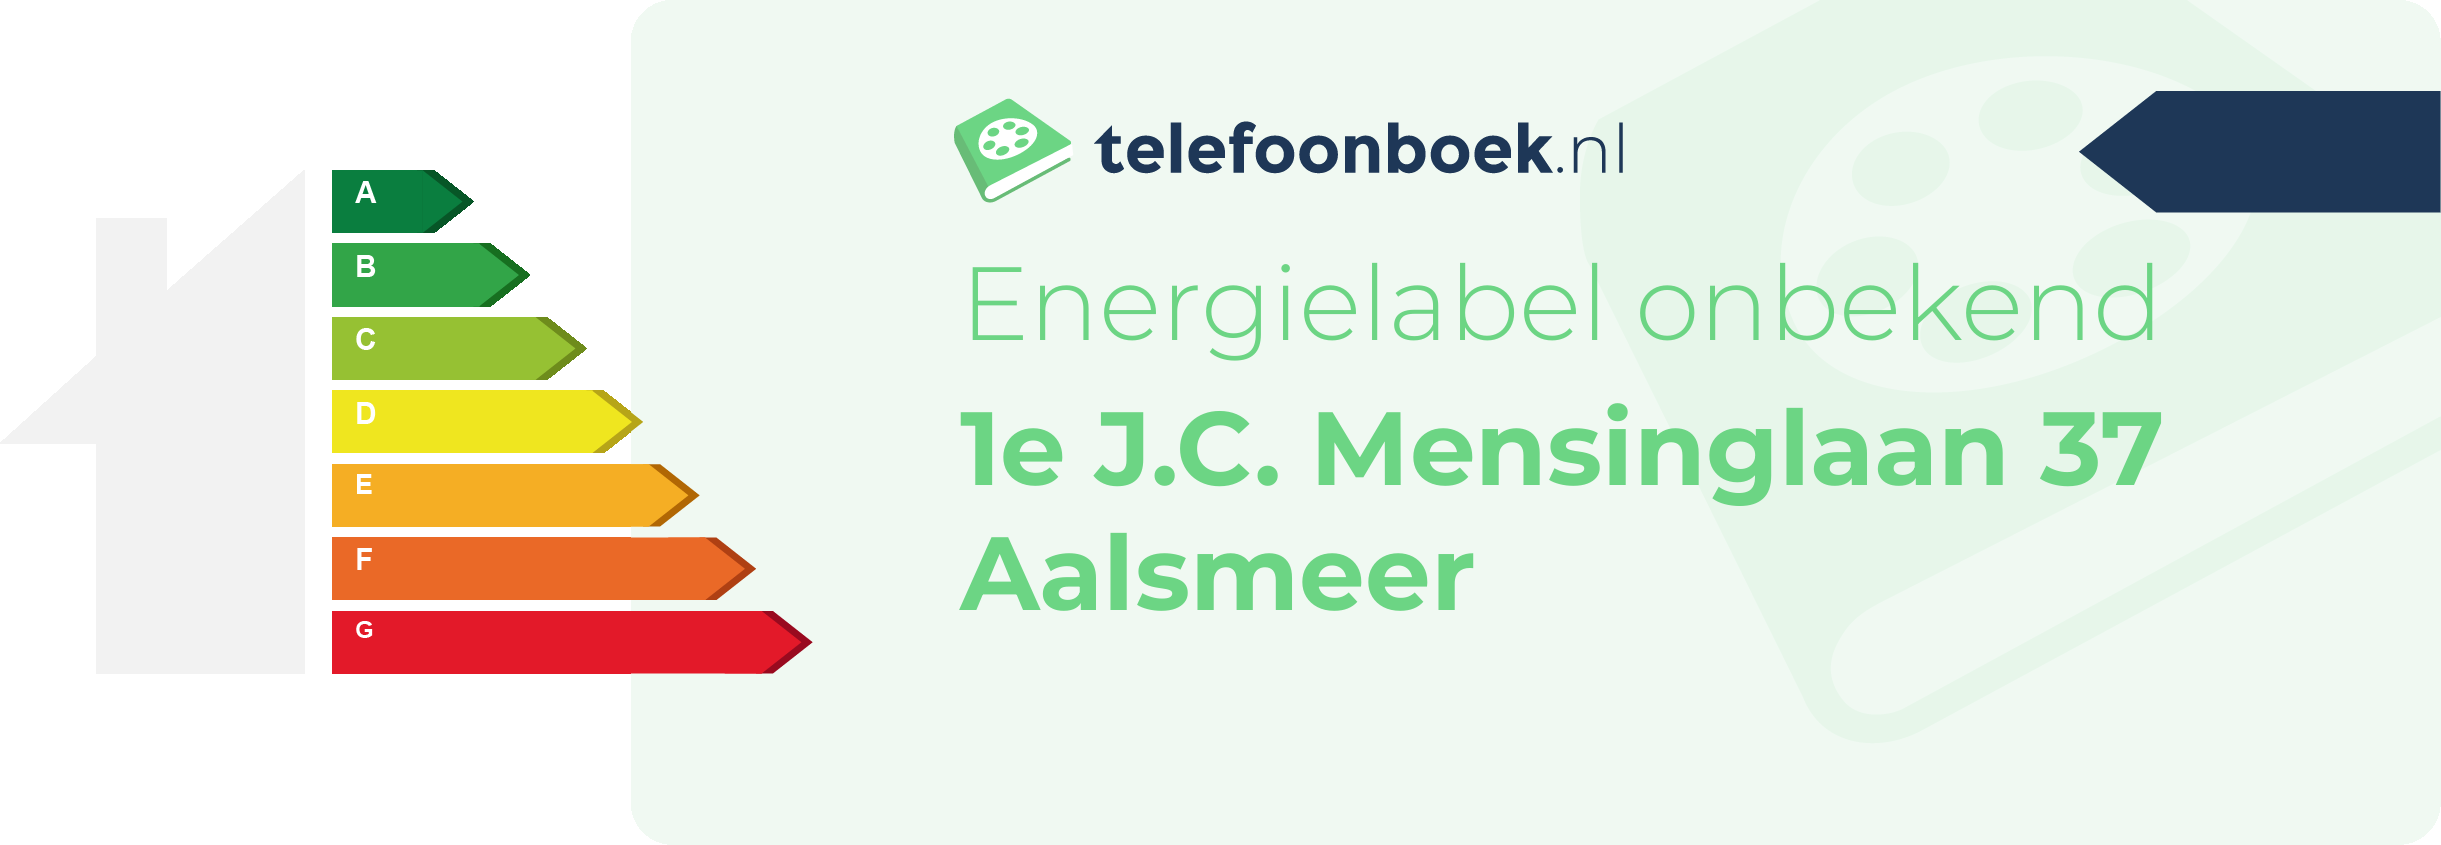 Energielabel 1e J.C. Mensinglaan 37 Aalsmeer